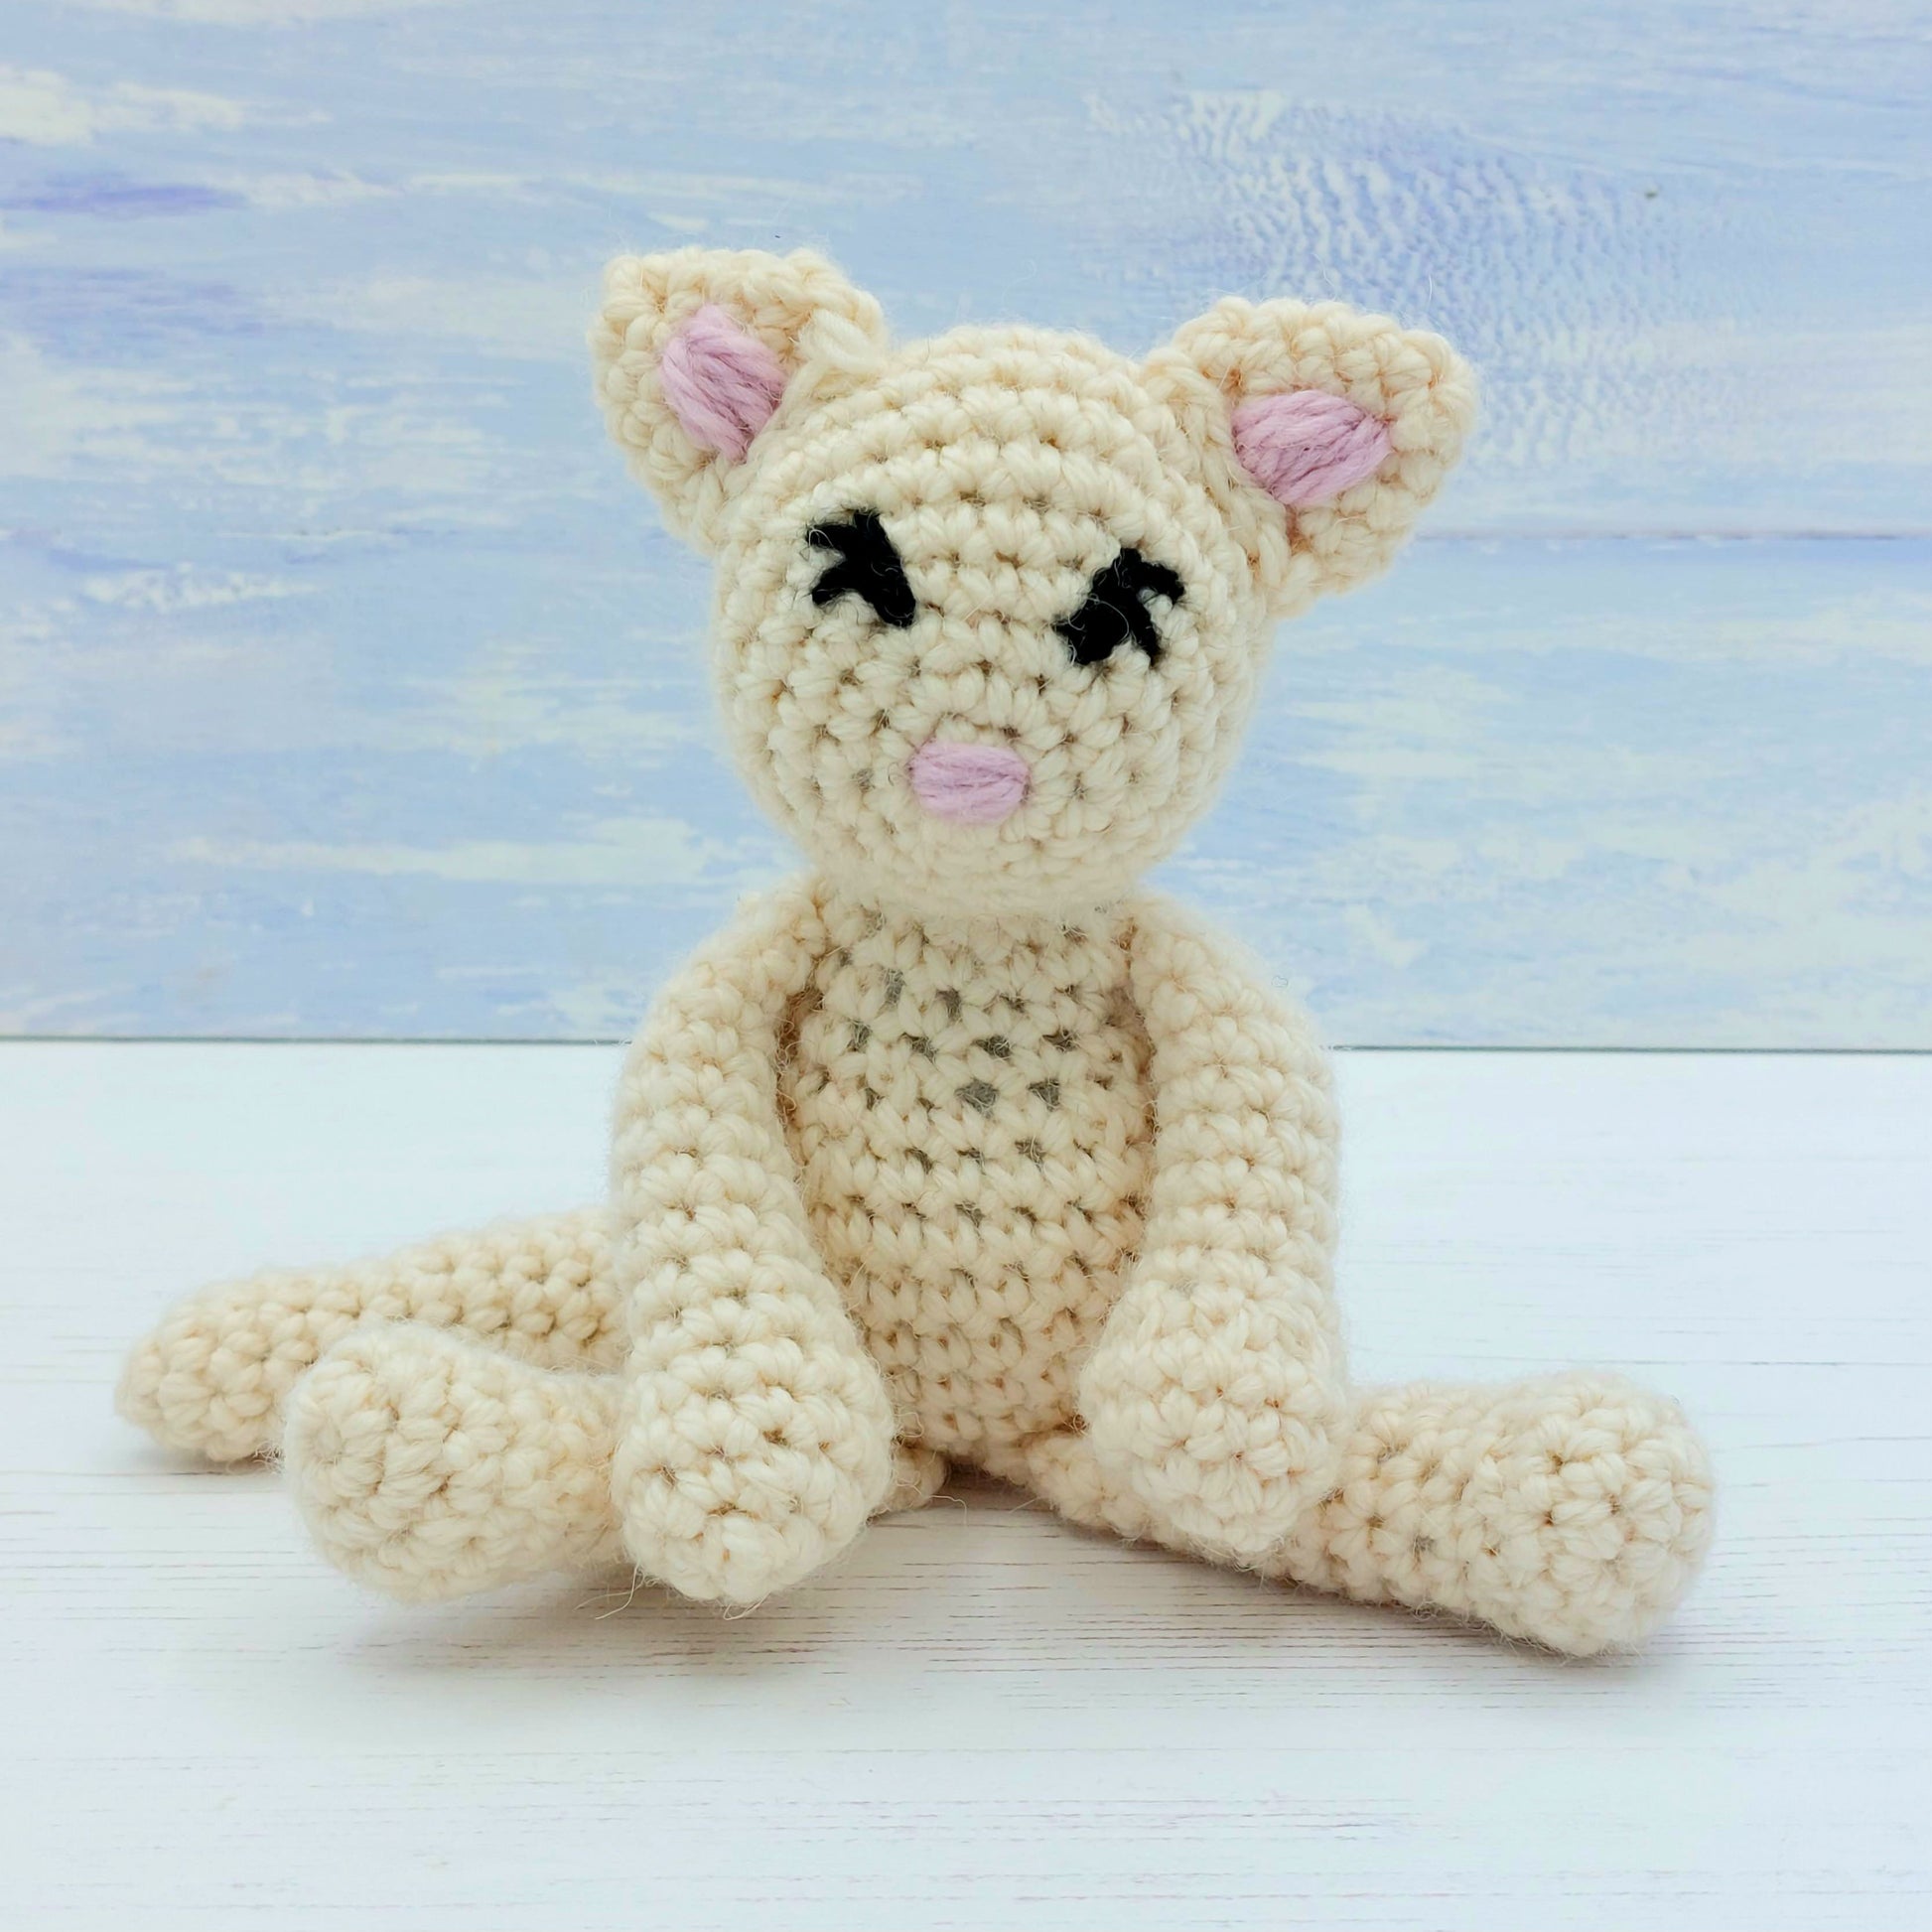 Lulu the Kitten Crochet Amigurumi Kit